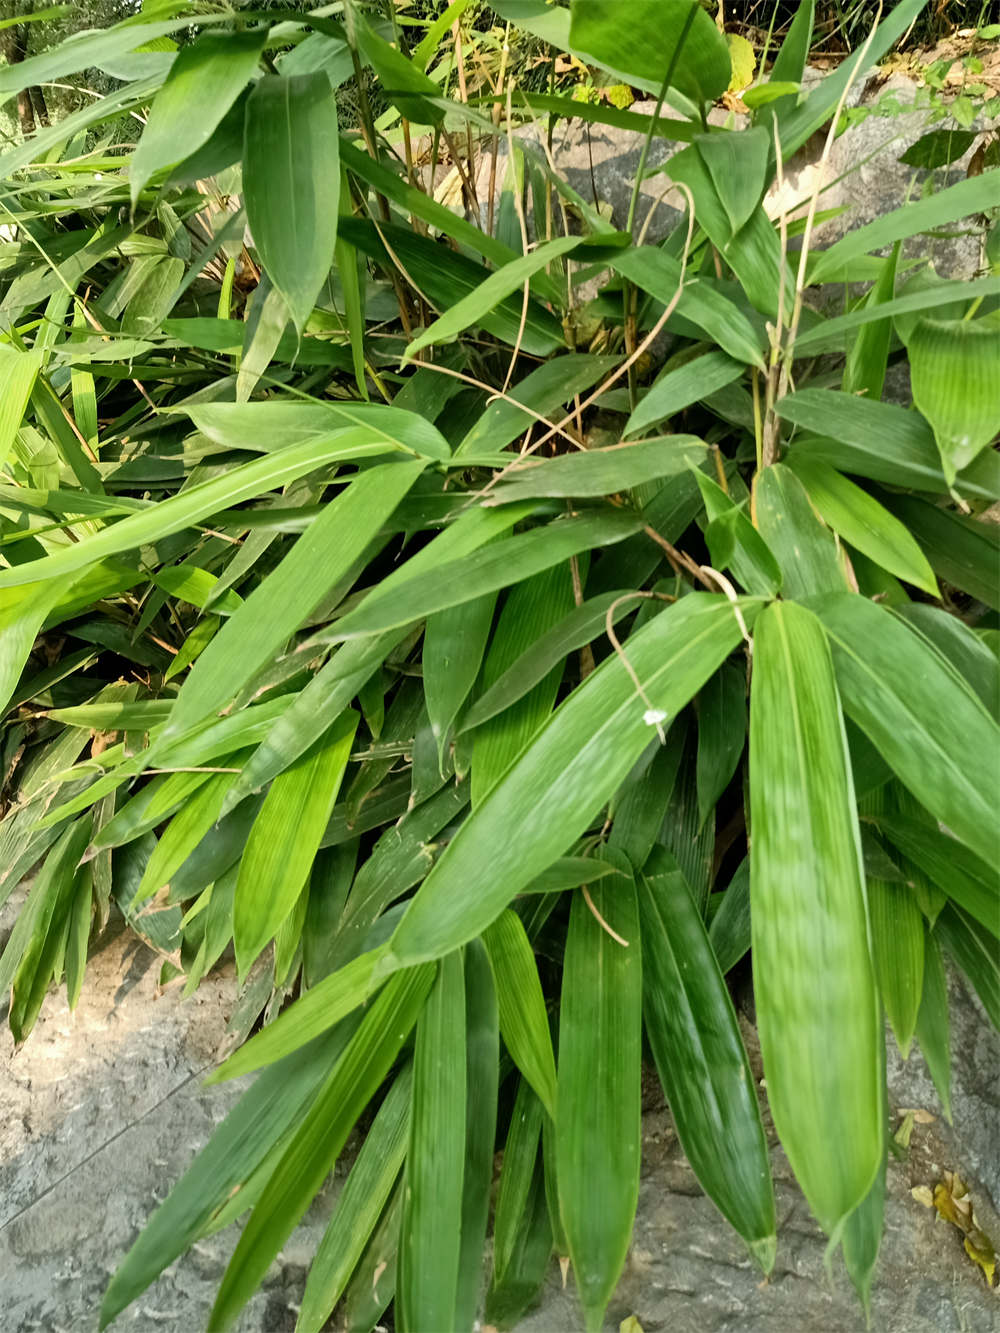 粽子叶是禾本科箬竹属植物的叶子,这种植物并不是树,外形接近竹子